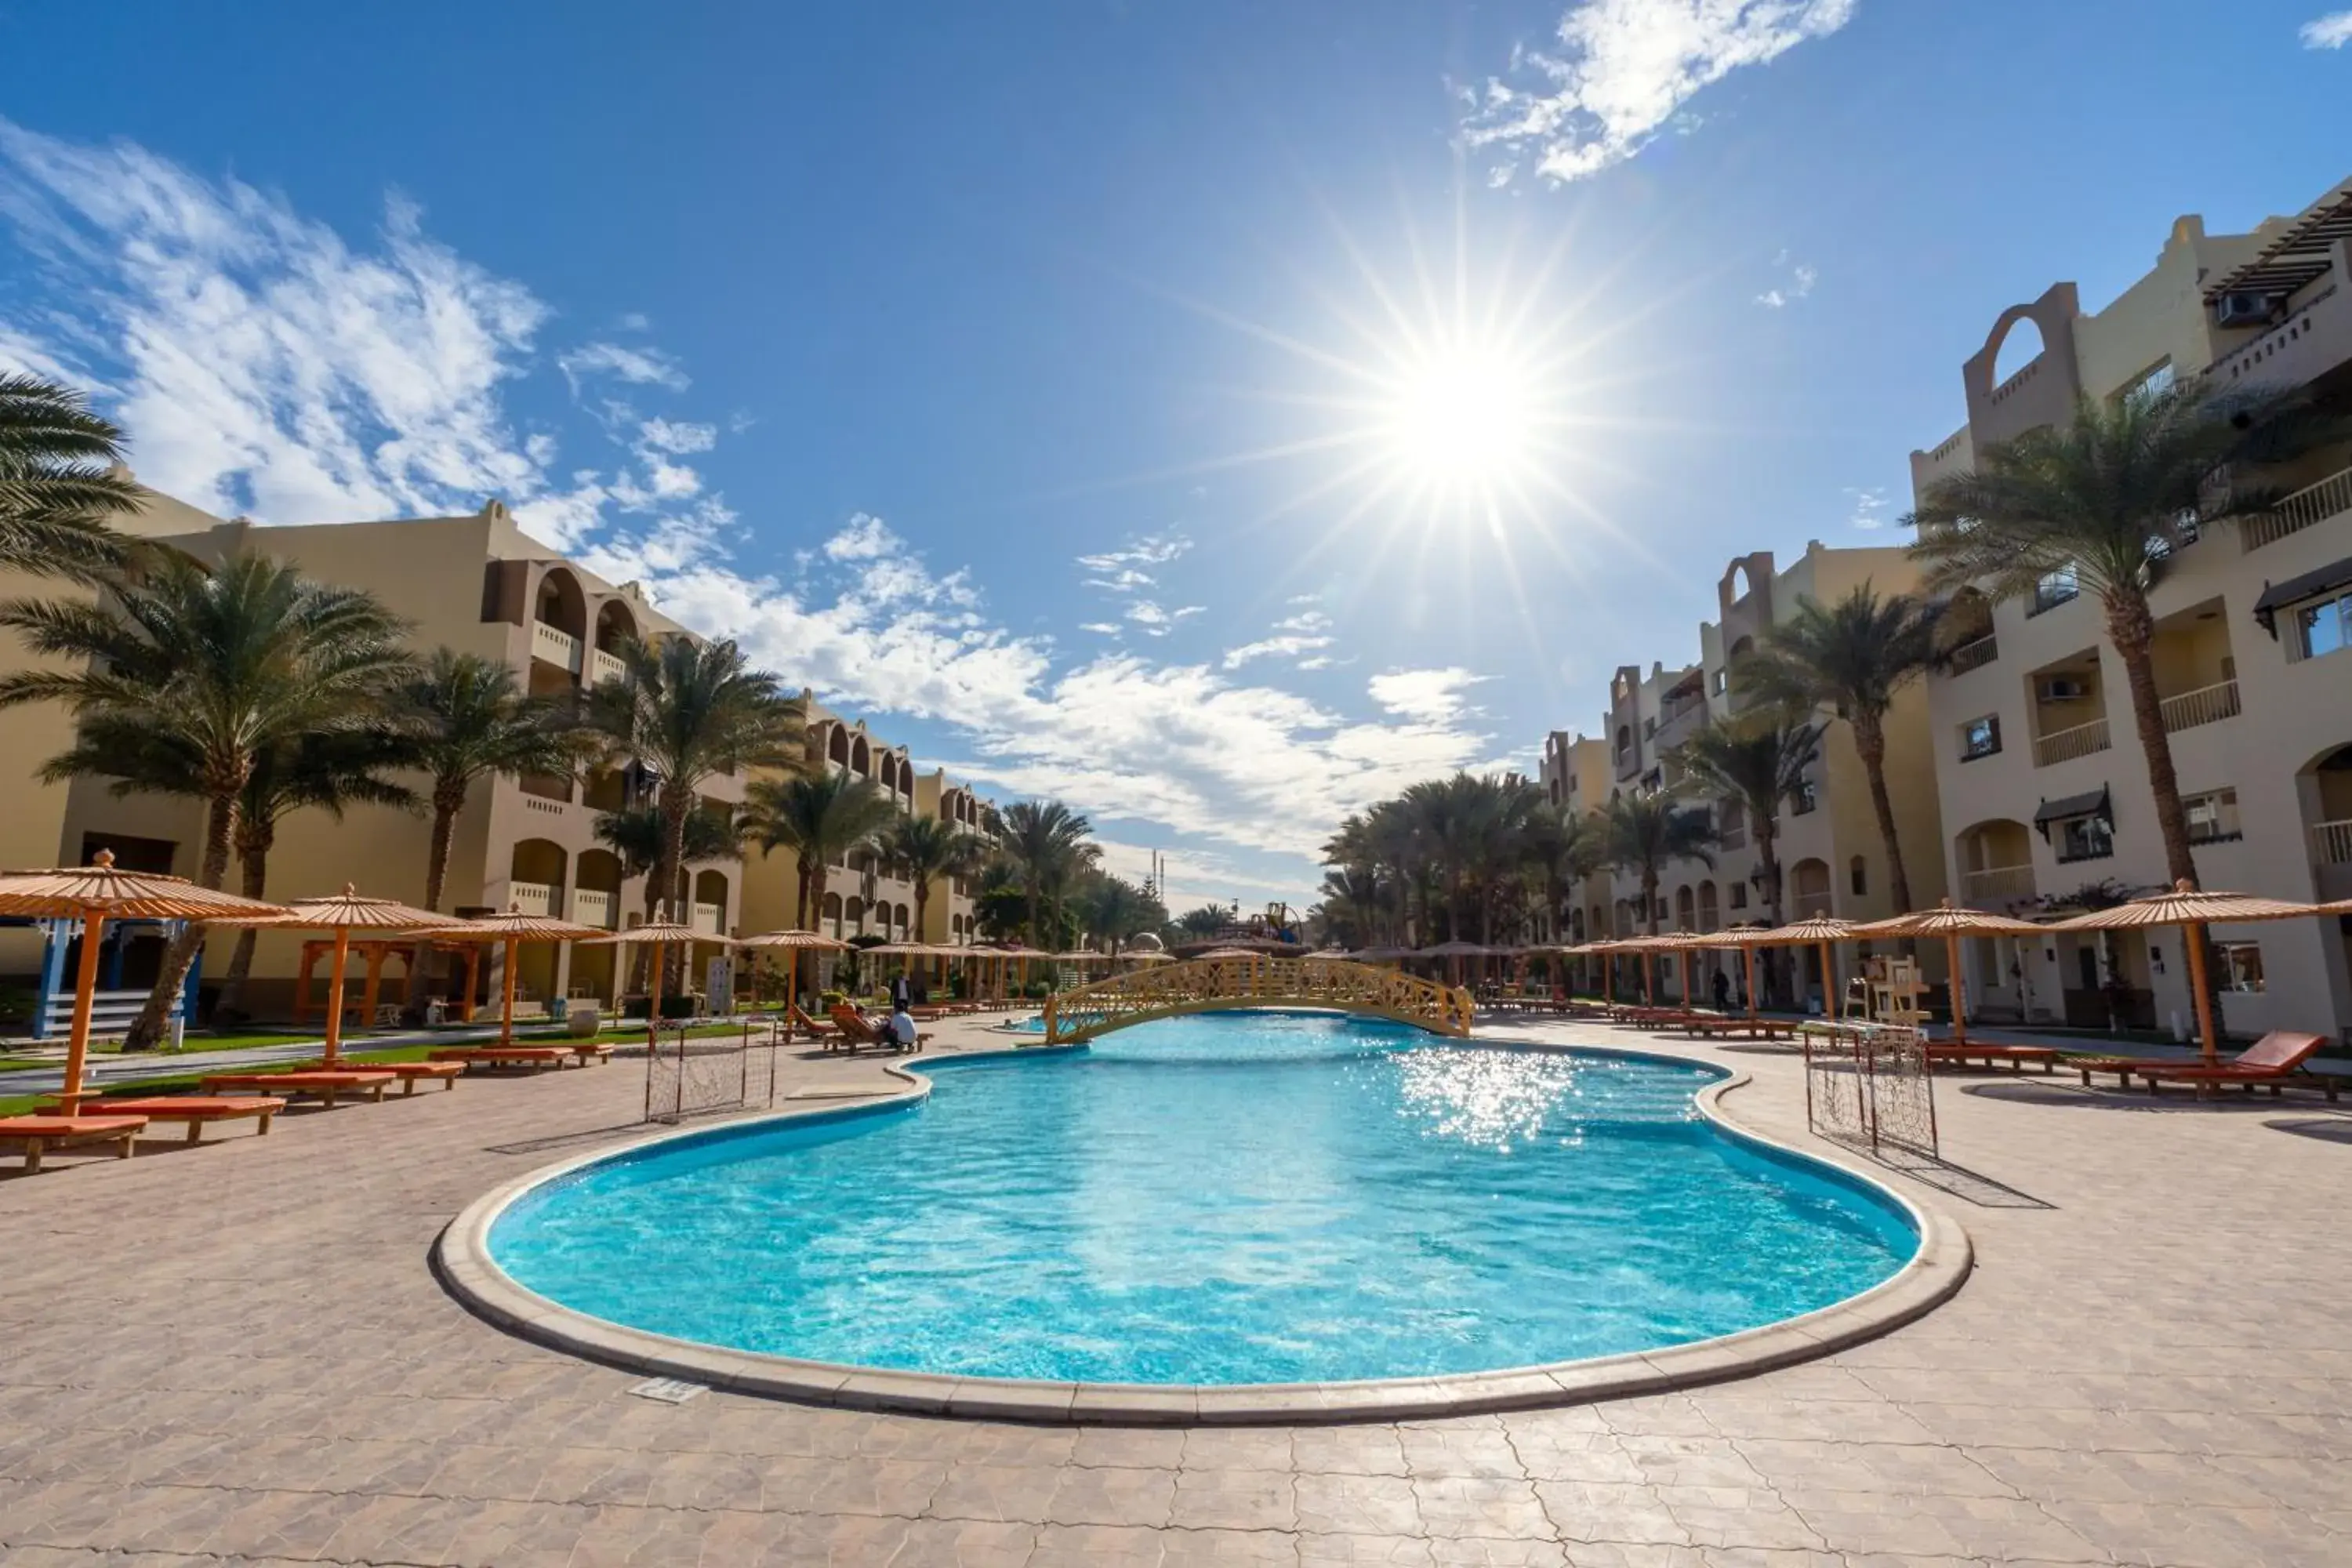 Swimming Pool in El Karma Beach Resort & Aqua Park - Hurghada